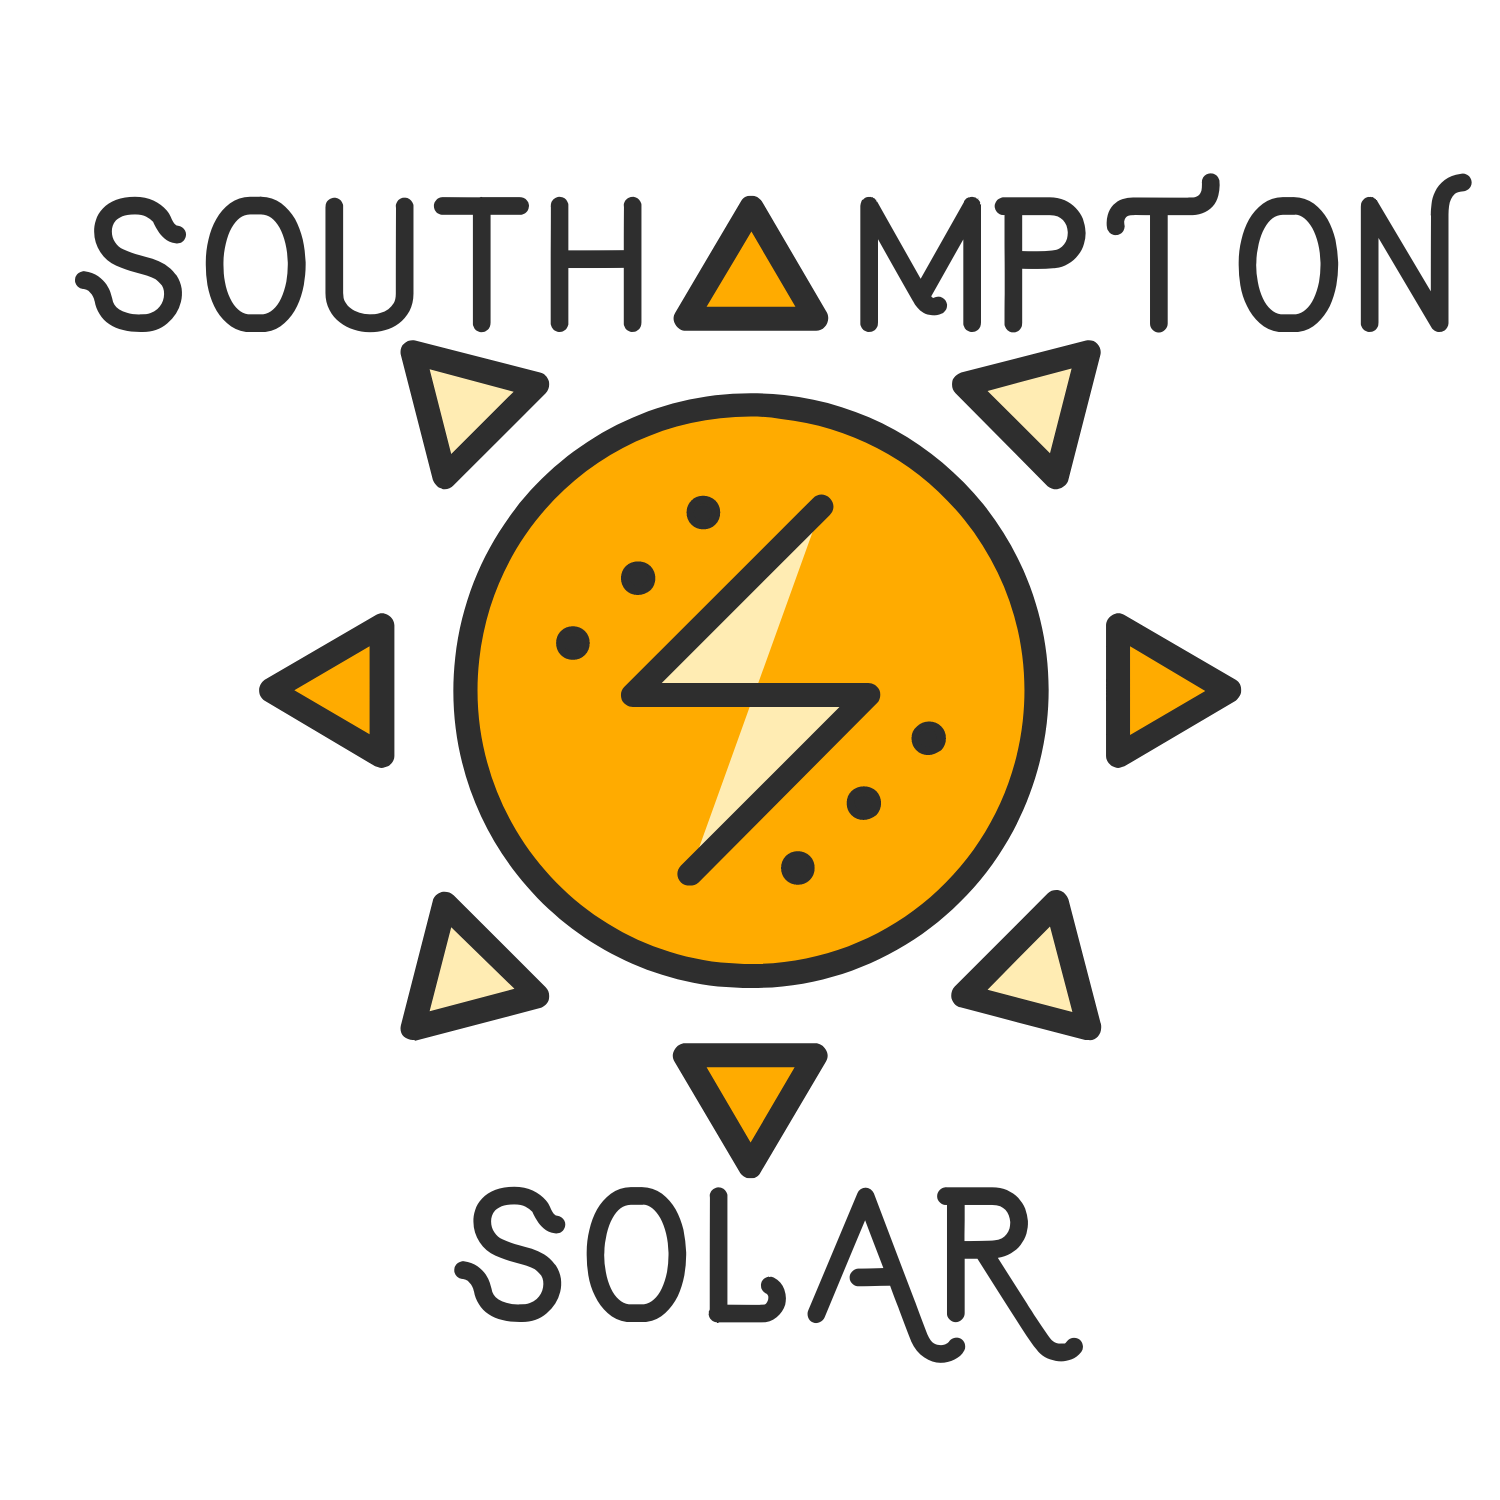 Southampton solar logo